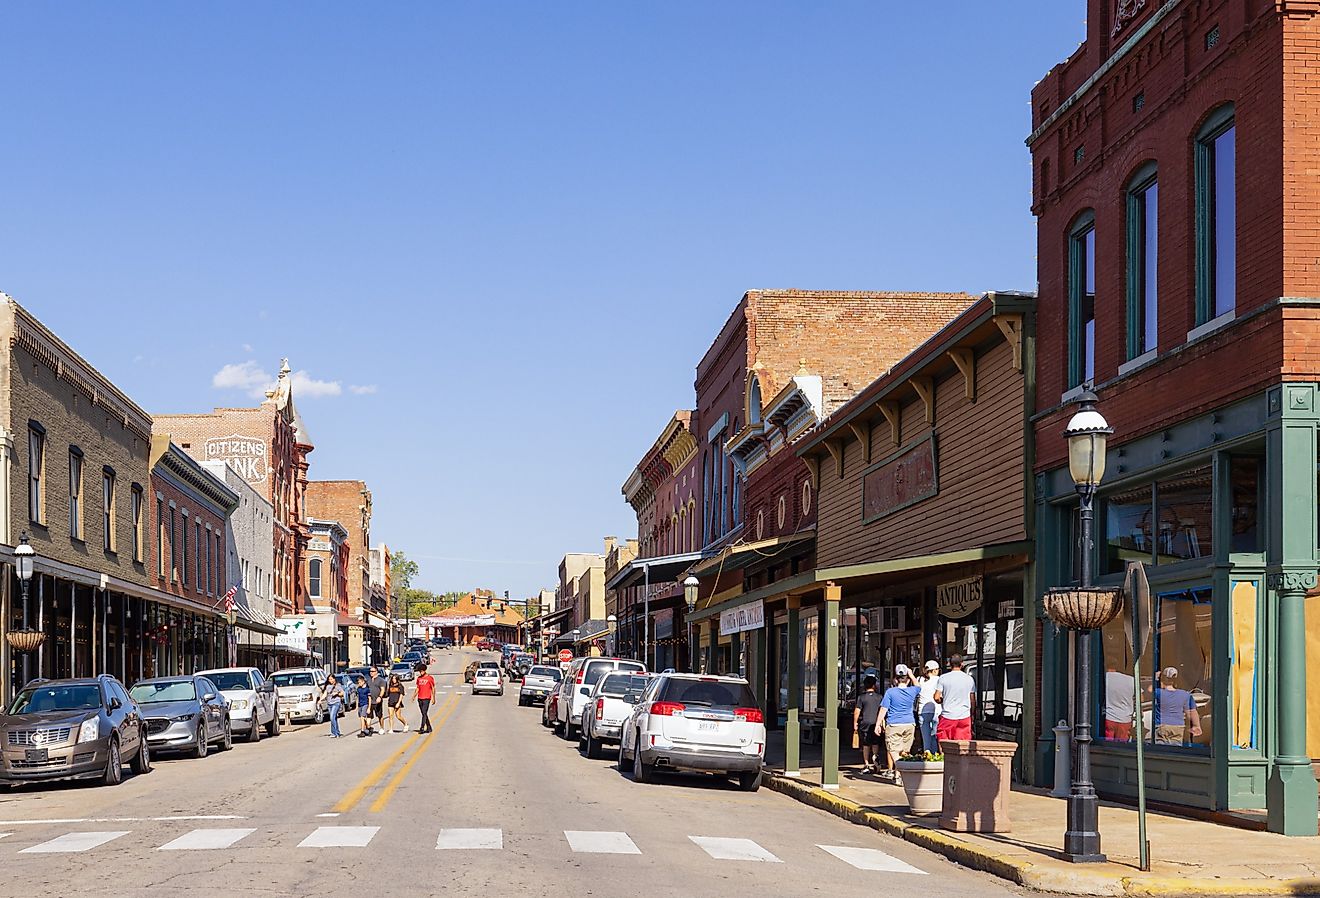 The old business district on Main Street in Van Buren, Arkansas. Image credit Roberto Galan via Shutterstock.com